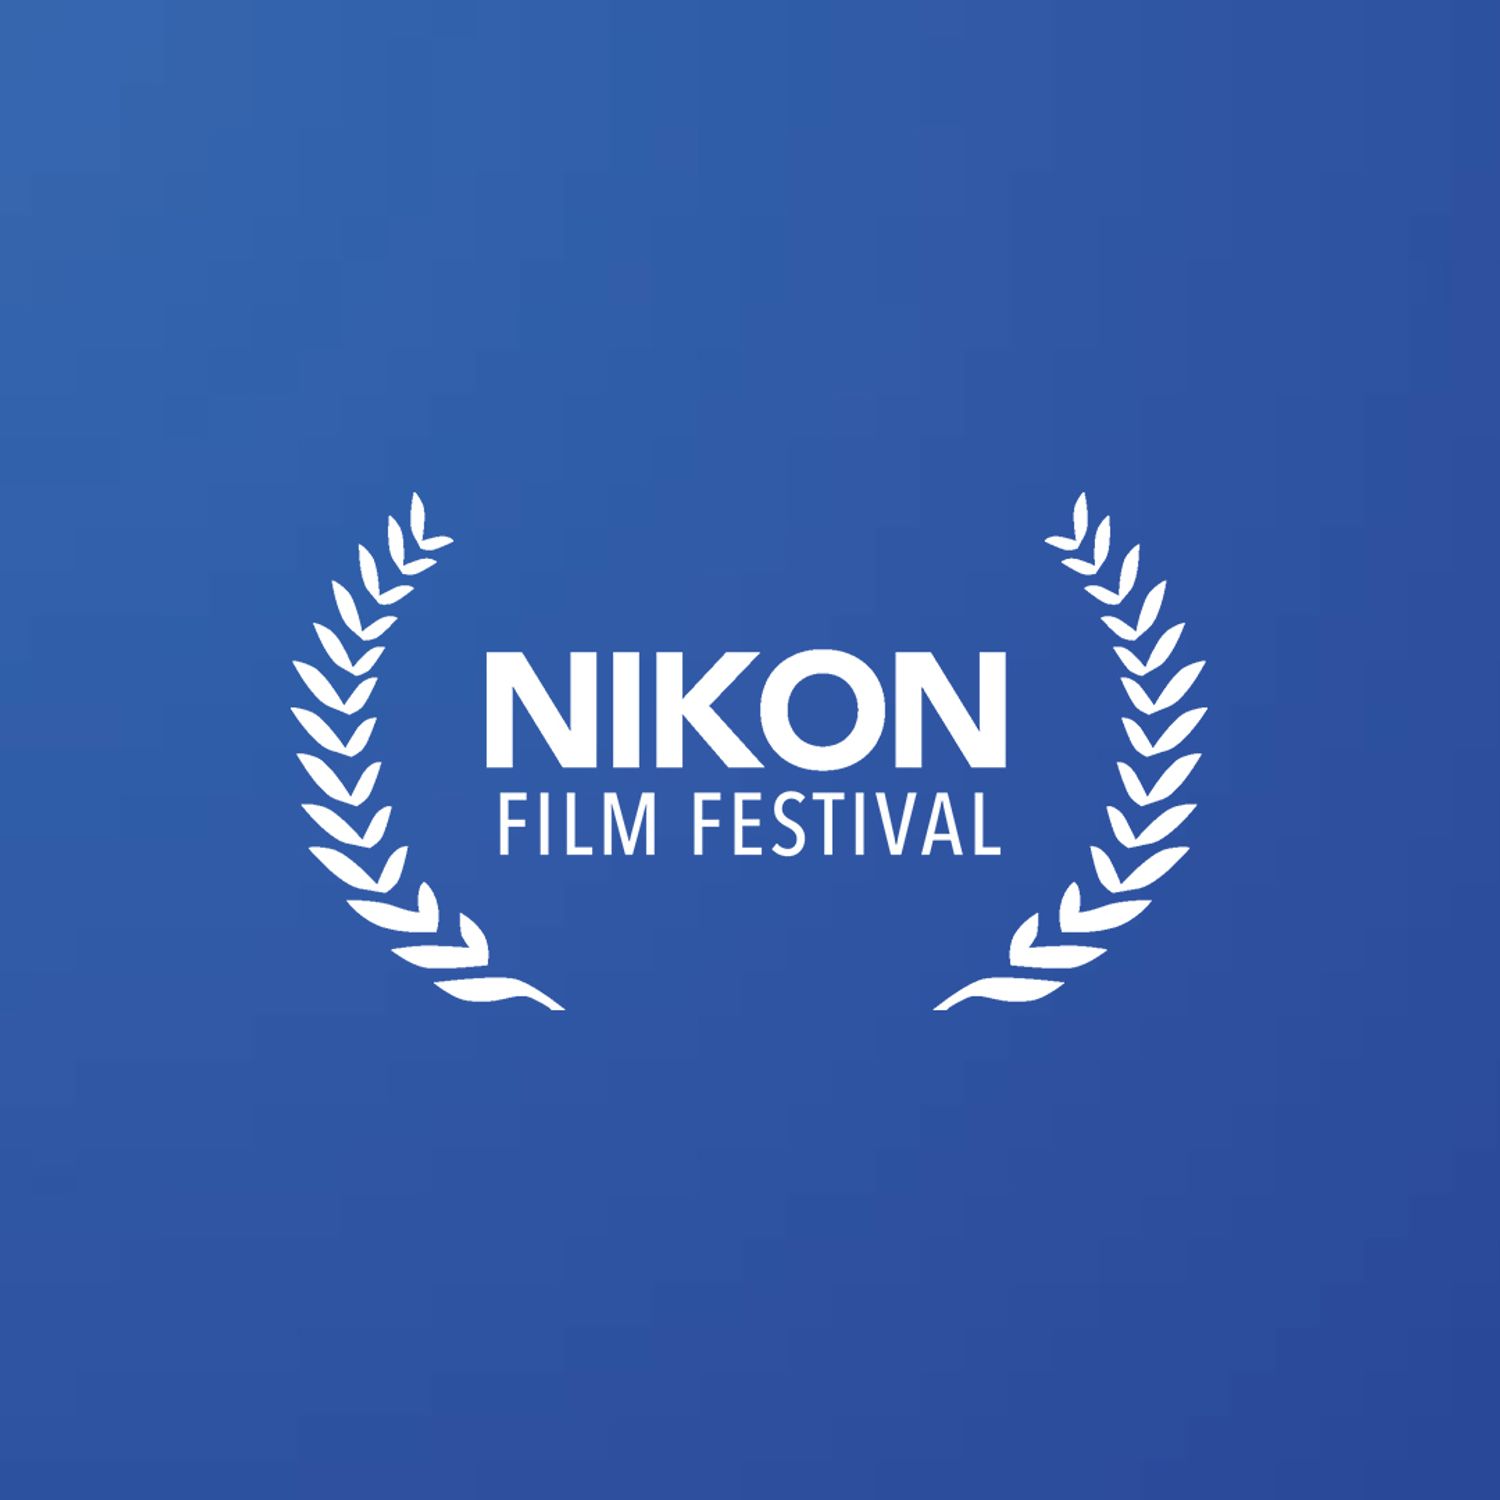 NIKON FILM FESTIVAL